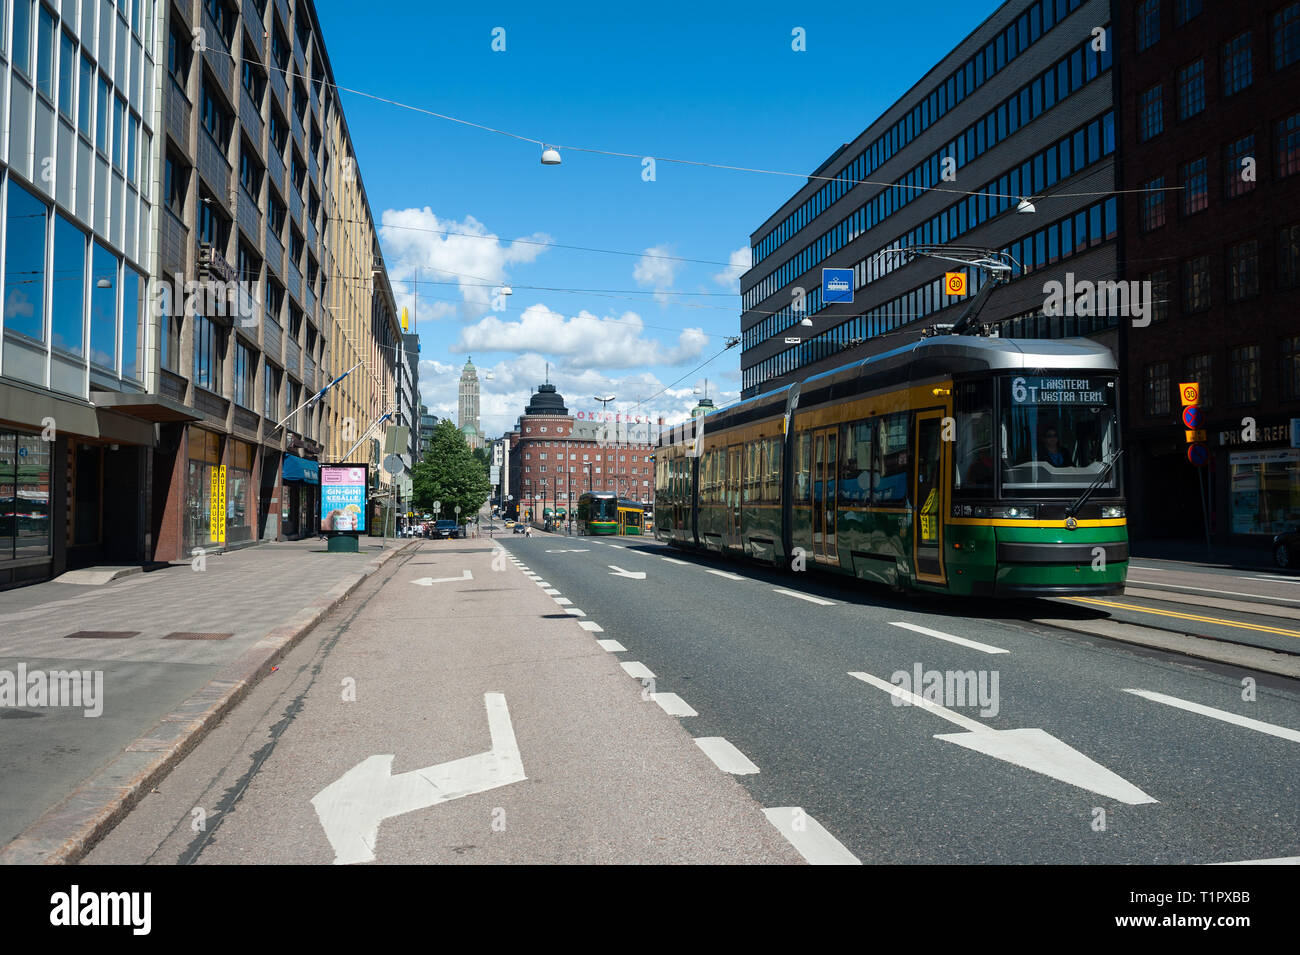 23.06.2018, Helsinki, Finlandia, Europa - Una scena di strada con un tram in Kallio al quartiere della capitale finlandese. Foto Stock